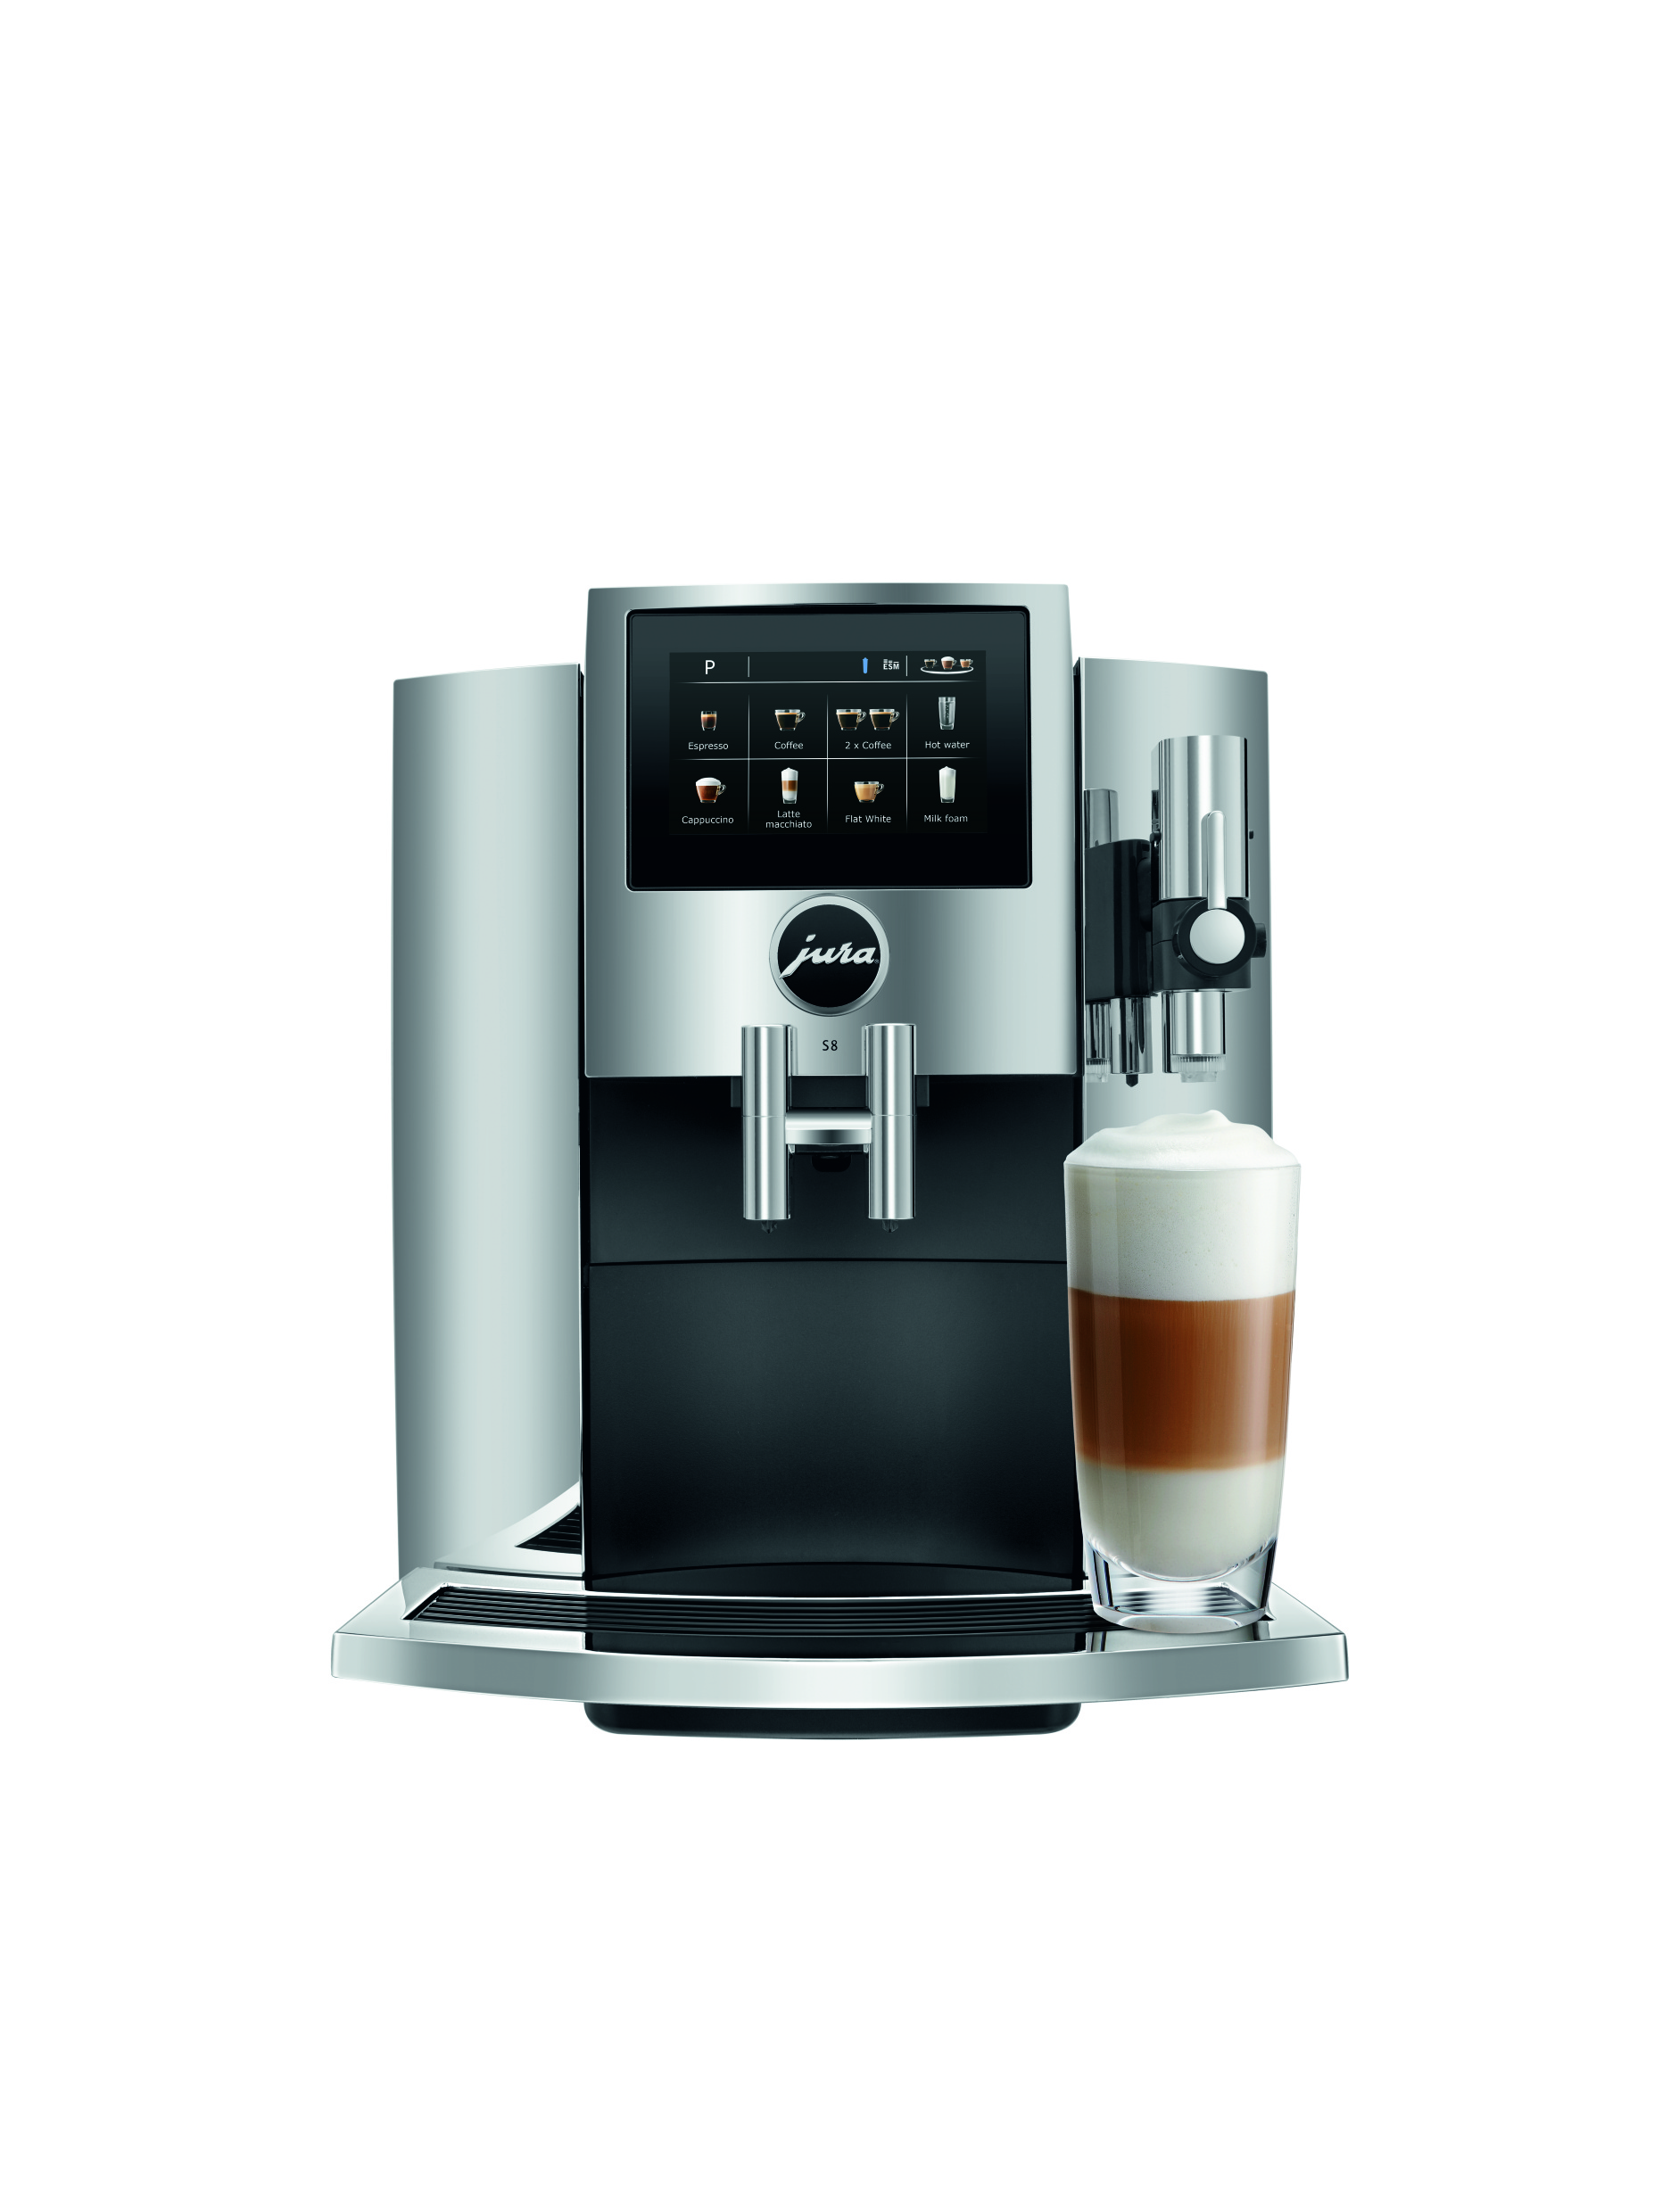 S8 från Jura erbjuder storslagen prestanda i ett kompakt utförande. Den exklusiva kaffemaskinen förenar det bästa från kompaktklassen, med element från premiumsegmentet, och har till och med en touch av det riktigt exklusiva från det professionella sortimentet. S8 är en exklusiv kaffemaskin för dig som verkligen vill en lyxig och kompakt produkt.